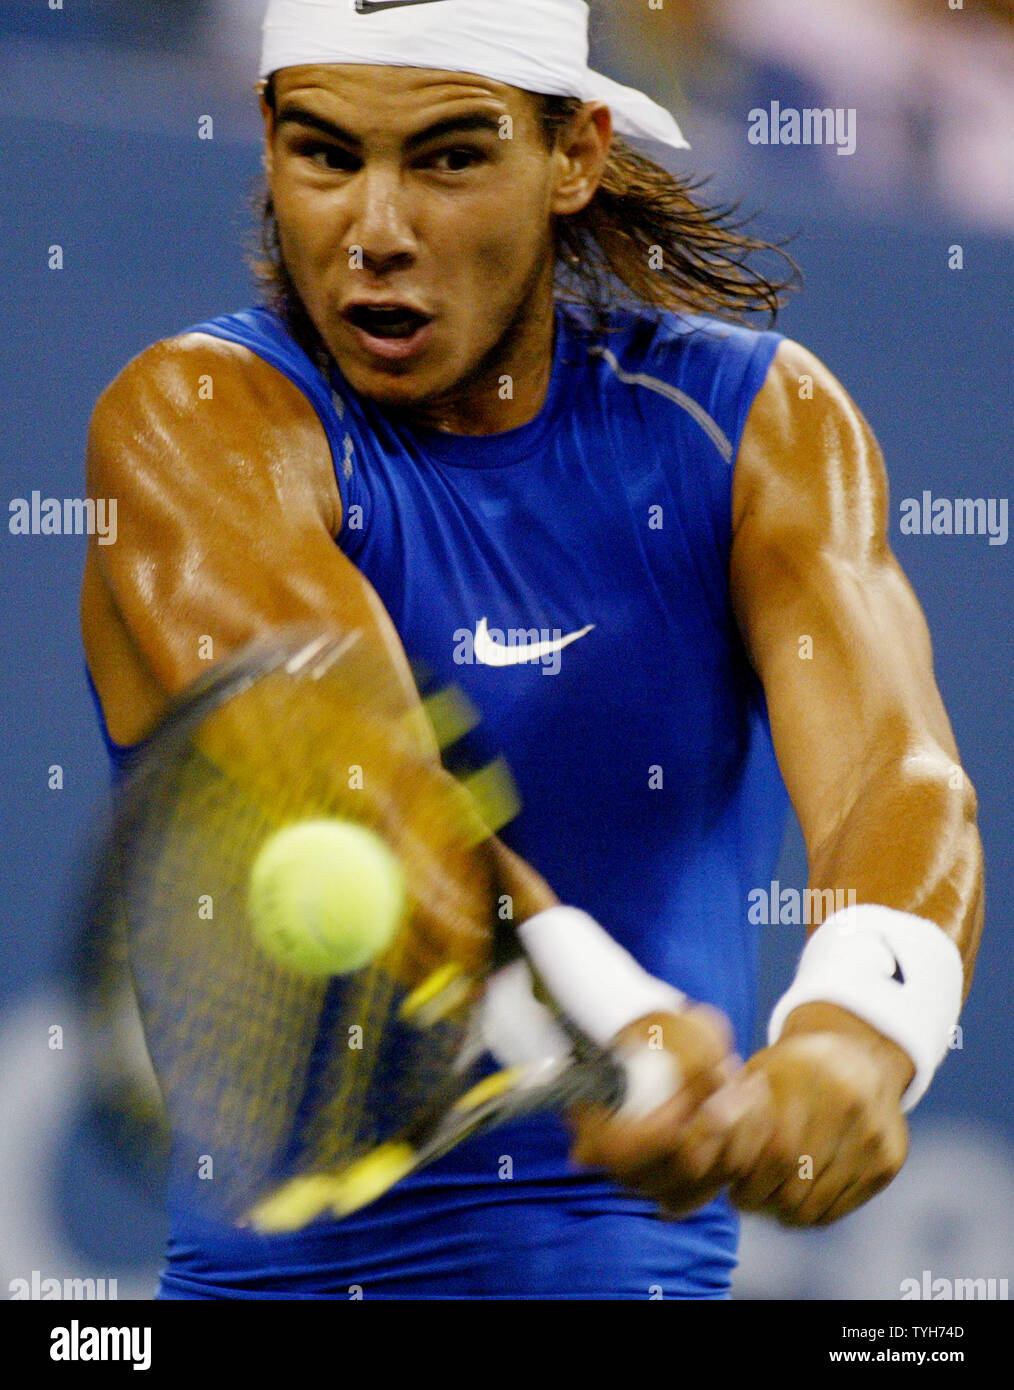 Rafael Nadal de l'Espagne, qui est classé deuxième, renvoie la balle à Scoville Jenkins (USA) au cours de la première série de leur match à l'US Open le 31 août 2005 à New York. (Photo d'UPI/Monika Graff) Banque D'Images